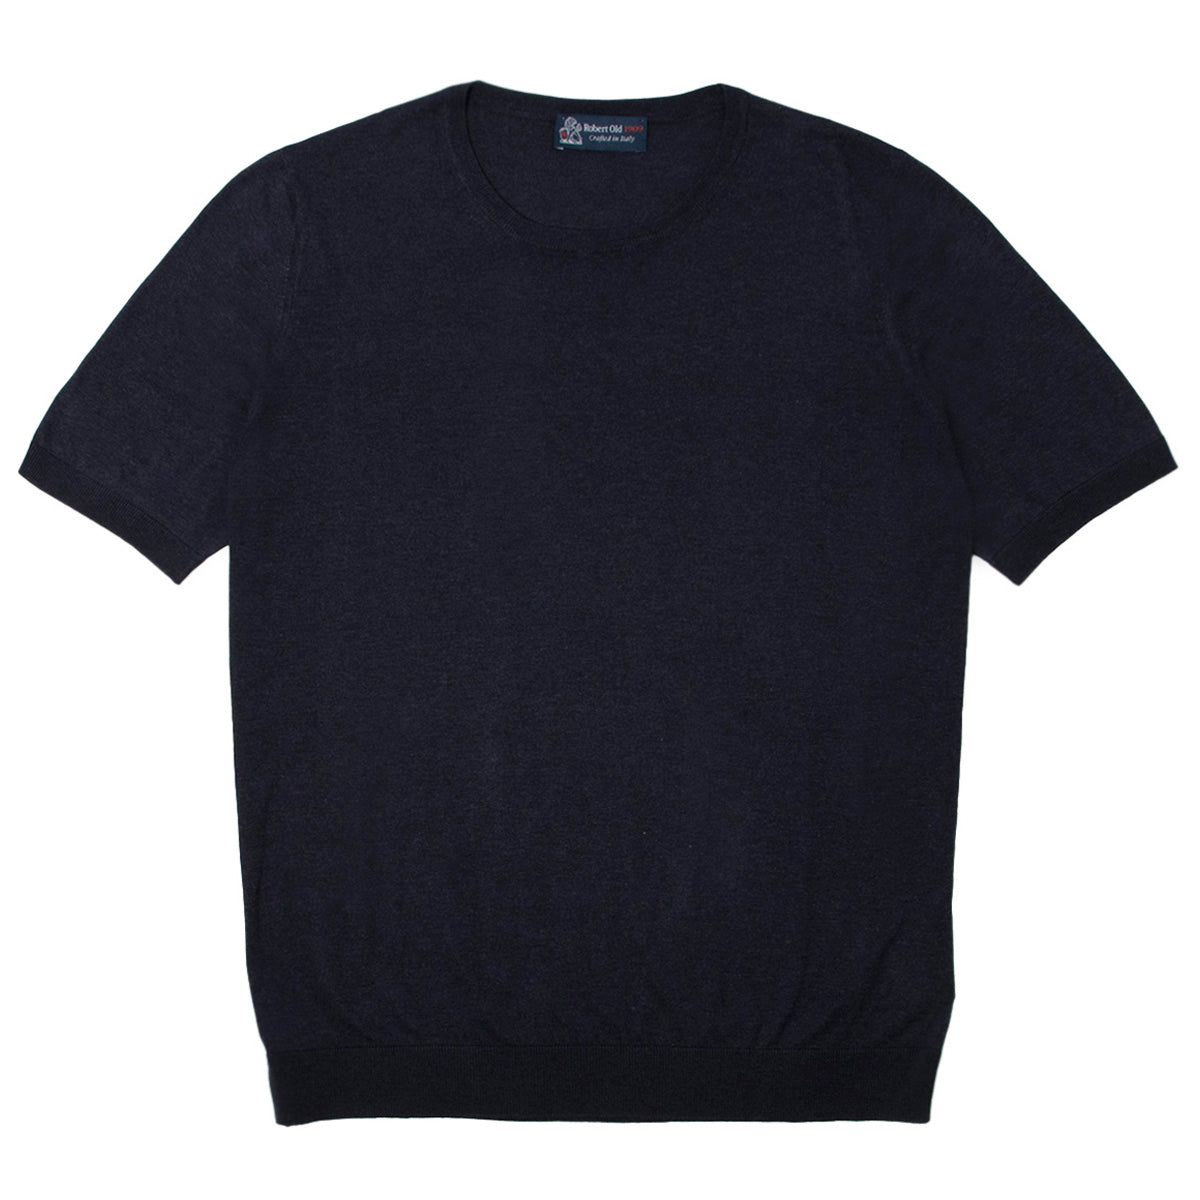 Navy 100% Silk Knit Lightweight T-Shirt  Robert Old   